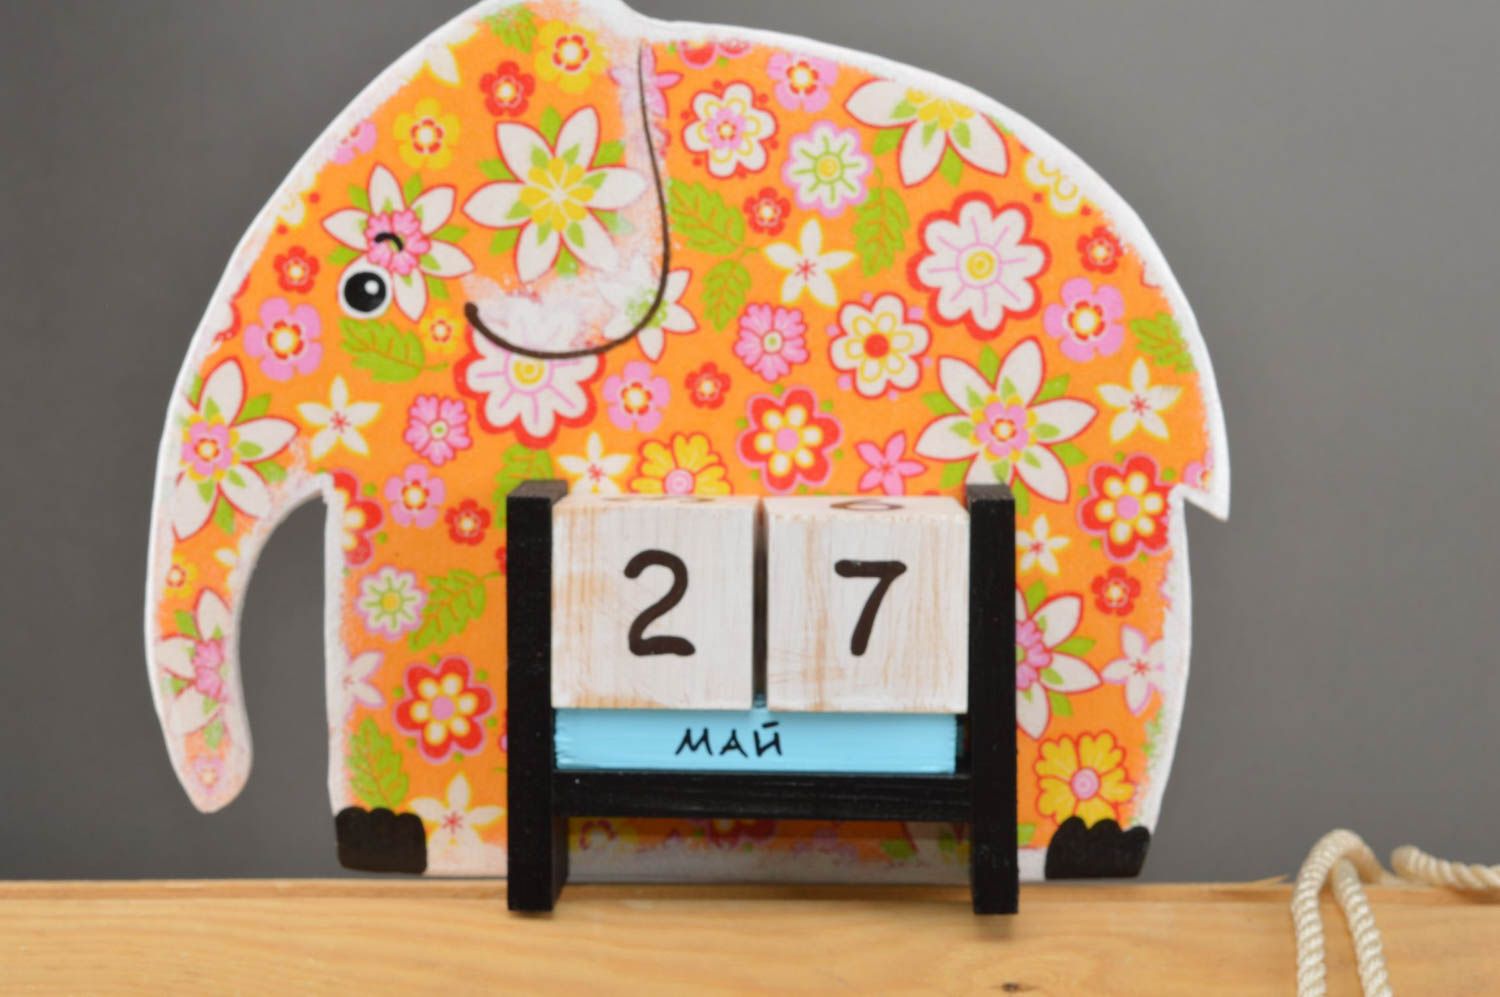 Handmade calendar for kids unusual toy elephant stylish table decor ideas photo 2